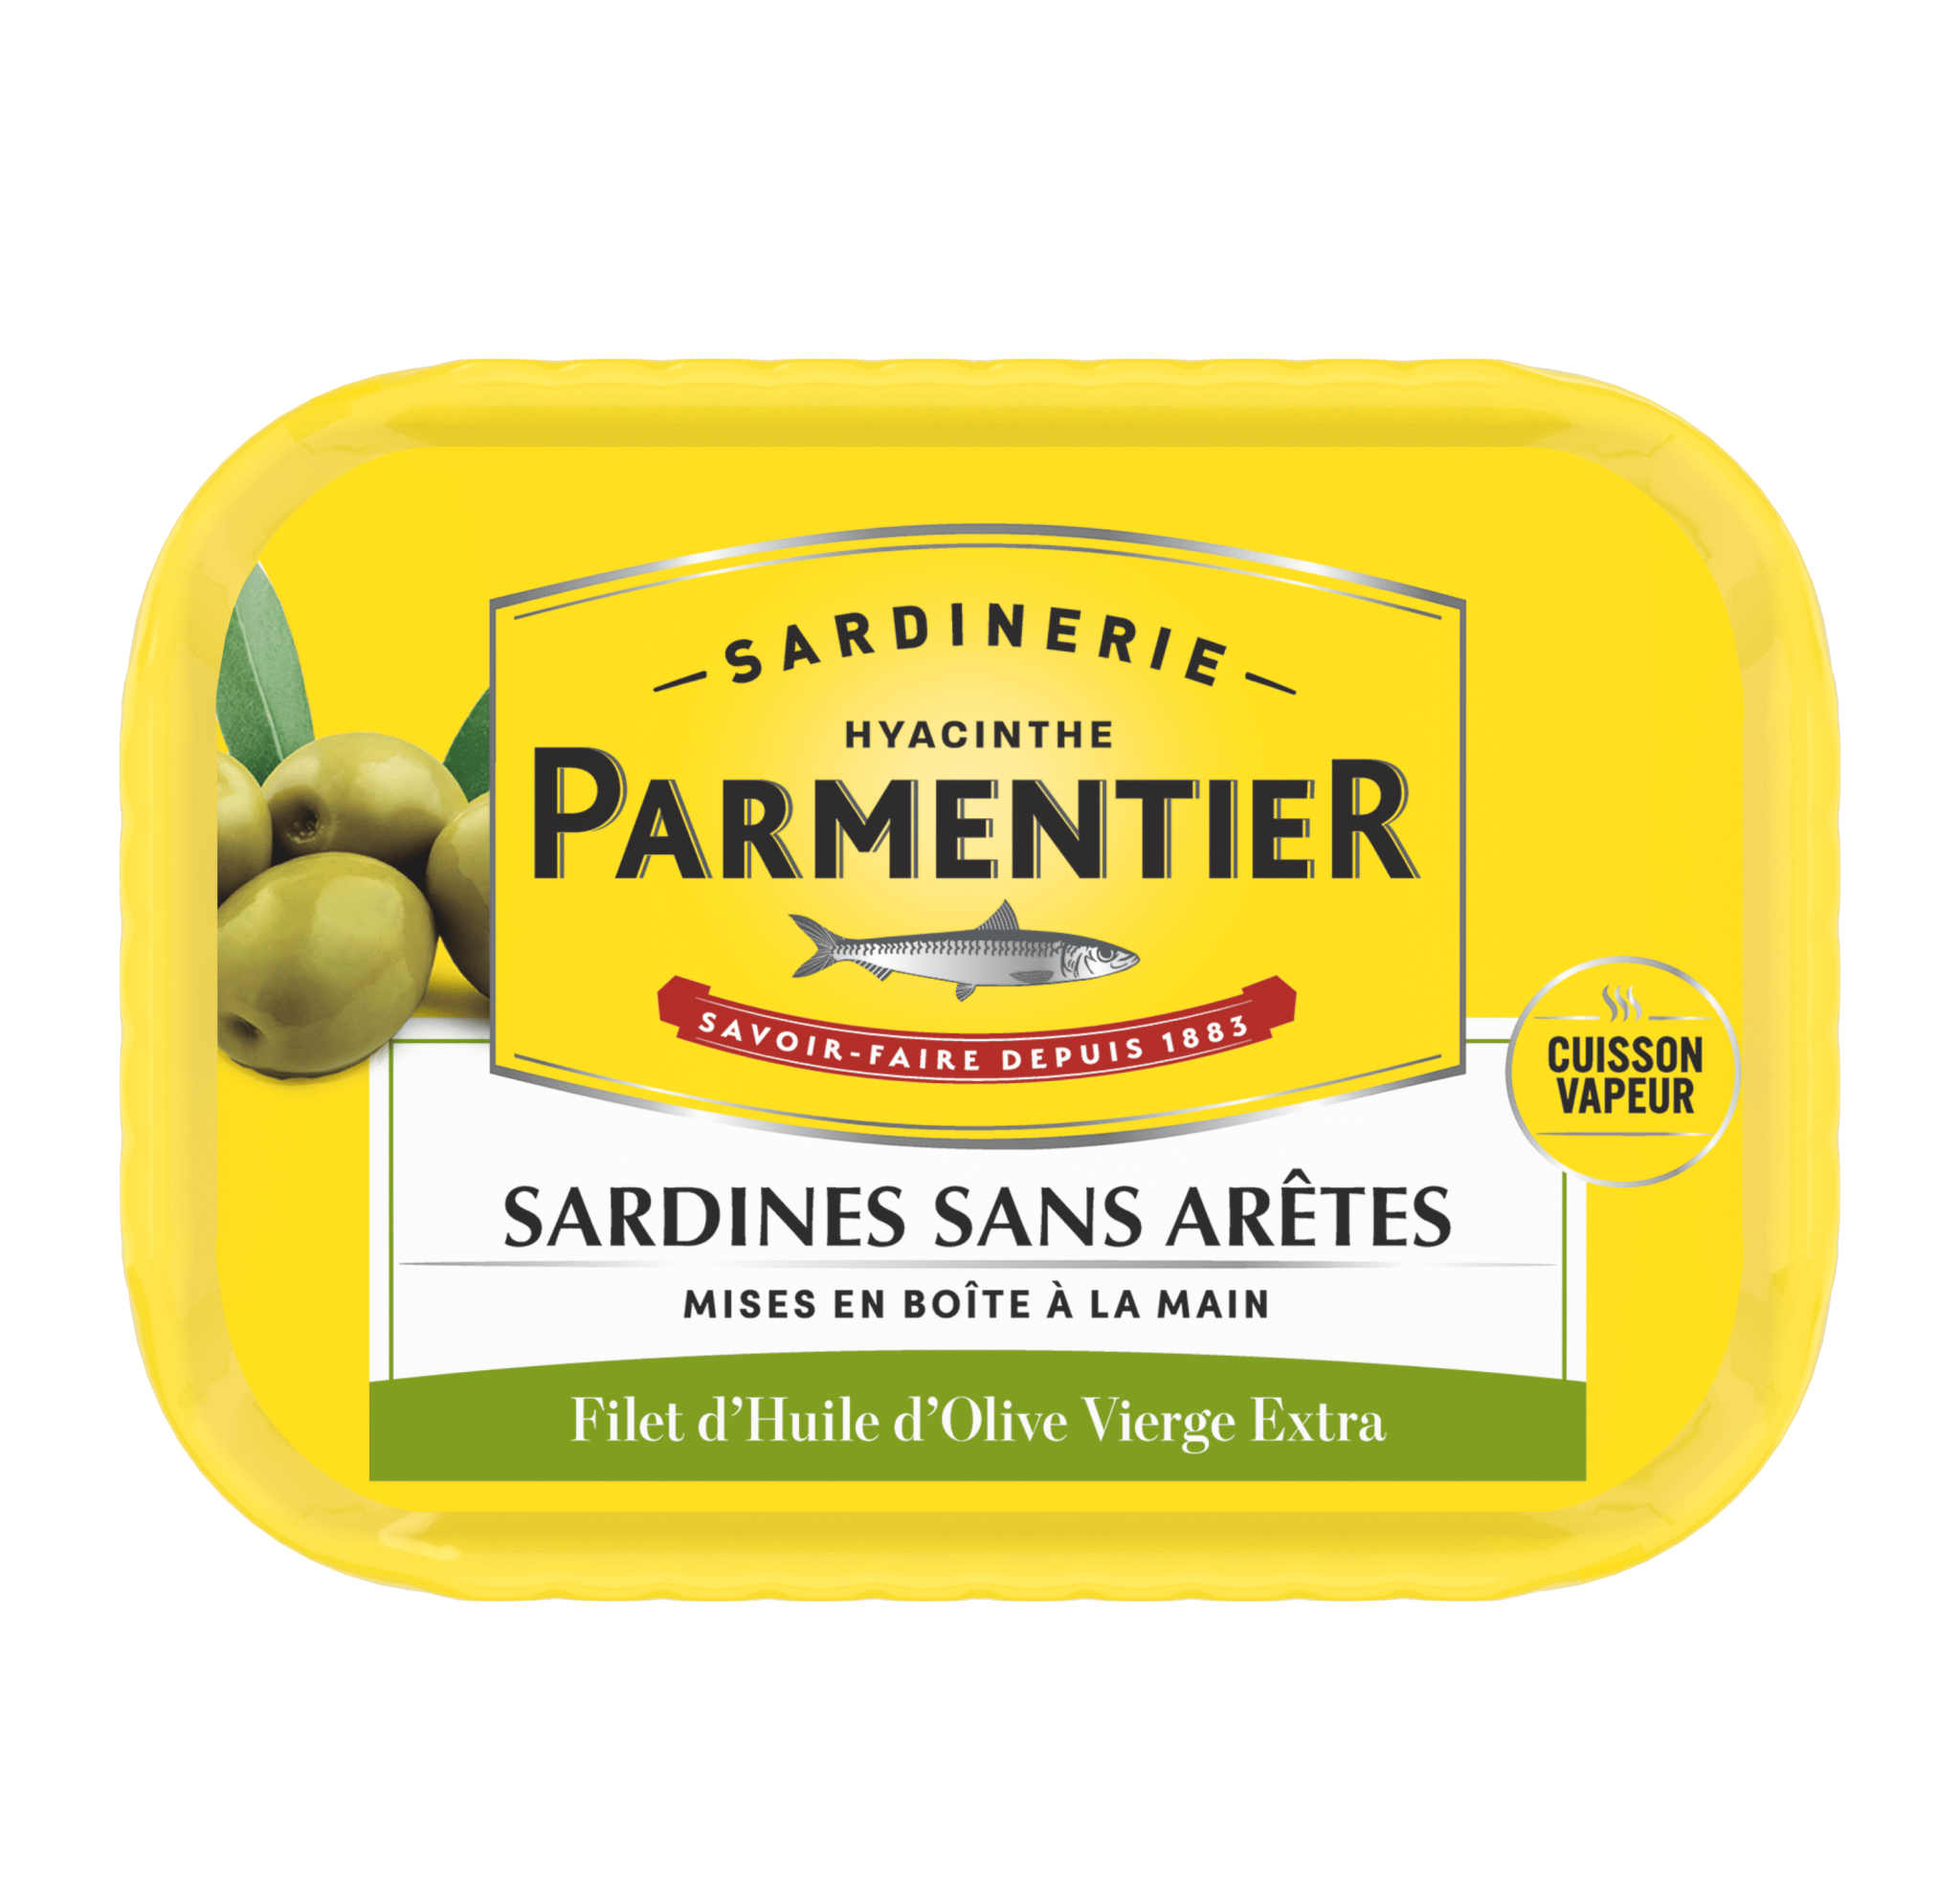 Les sardines Parmentier hissent le pavillon français